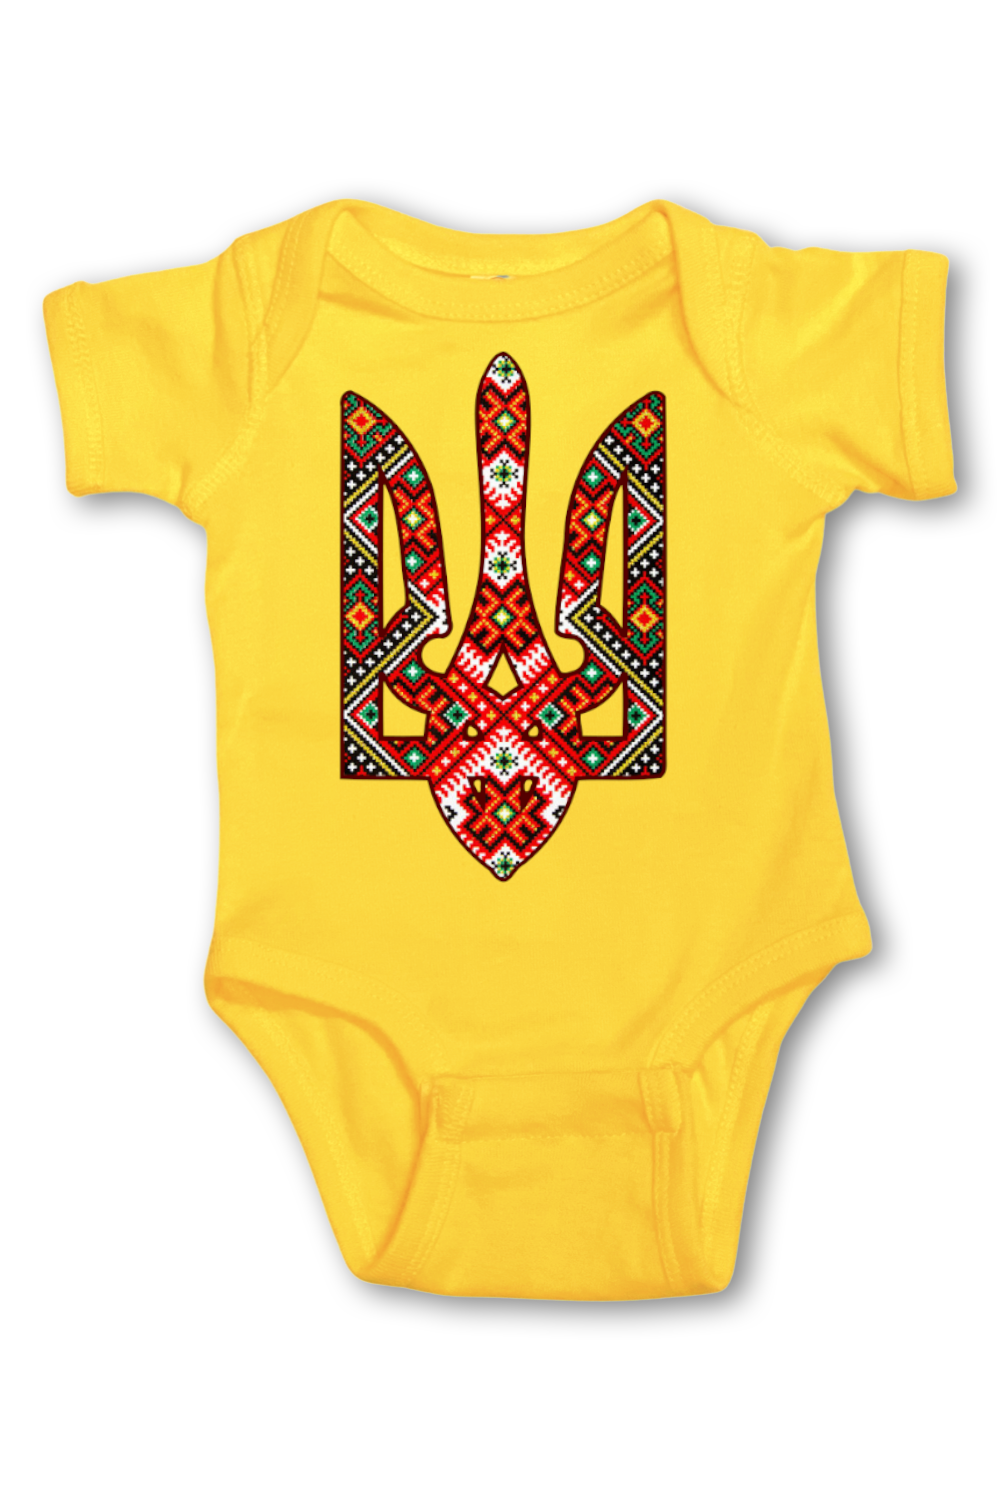 Infant onesie bodysuit "Etno Truzyb"